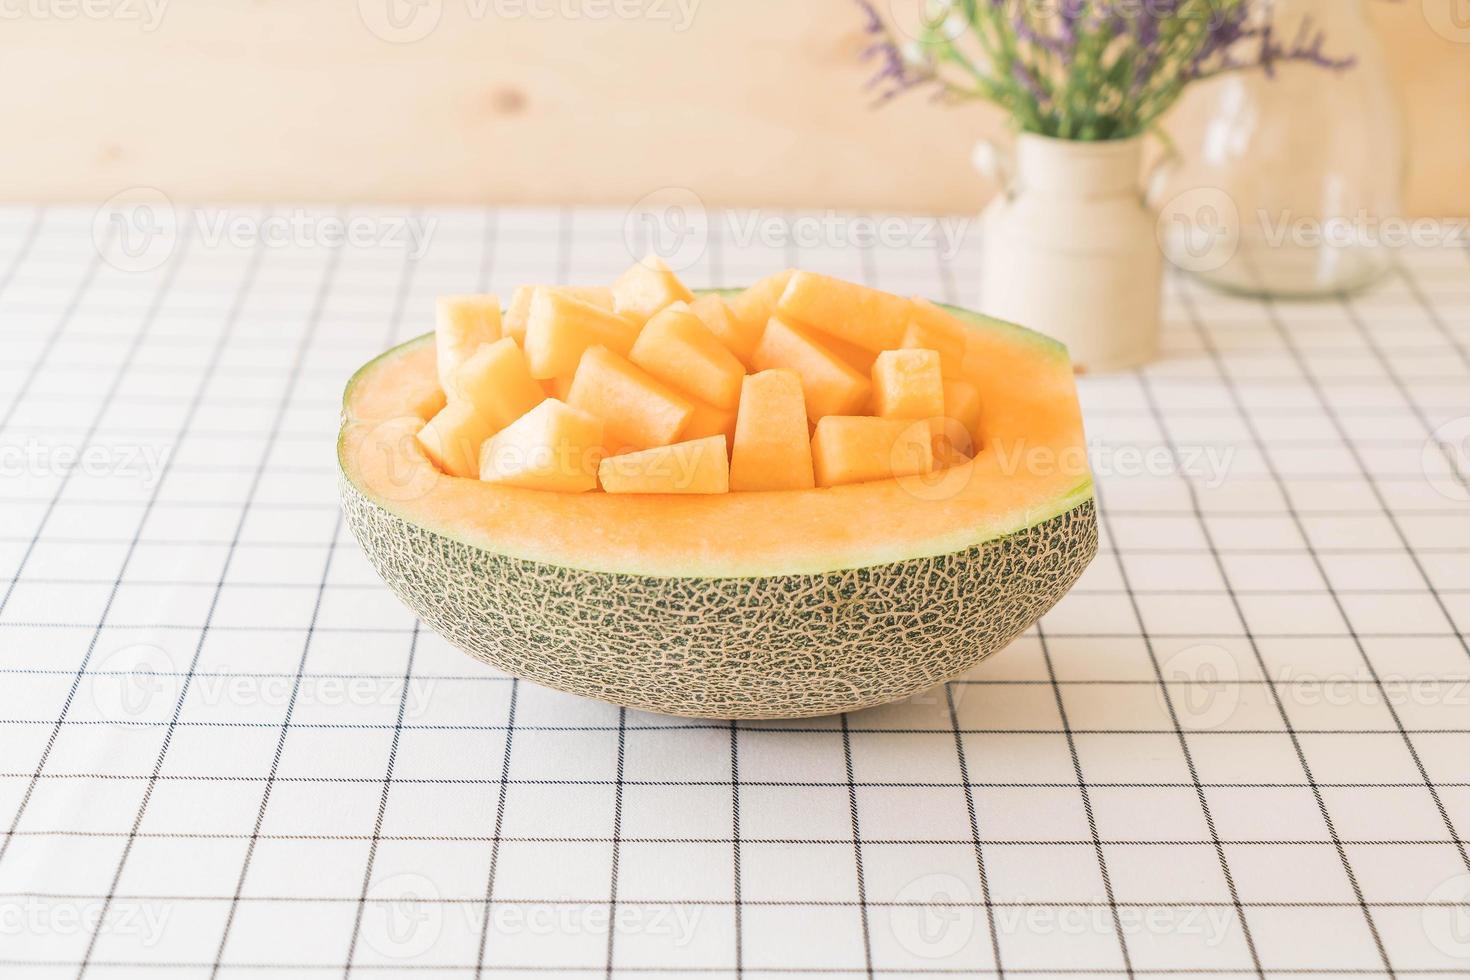 färsk cantaloupemelon till efterrätt på bordet foto